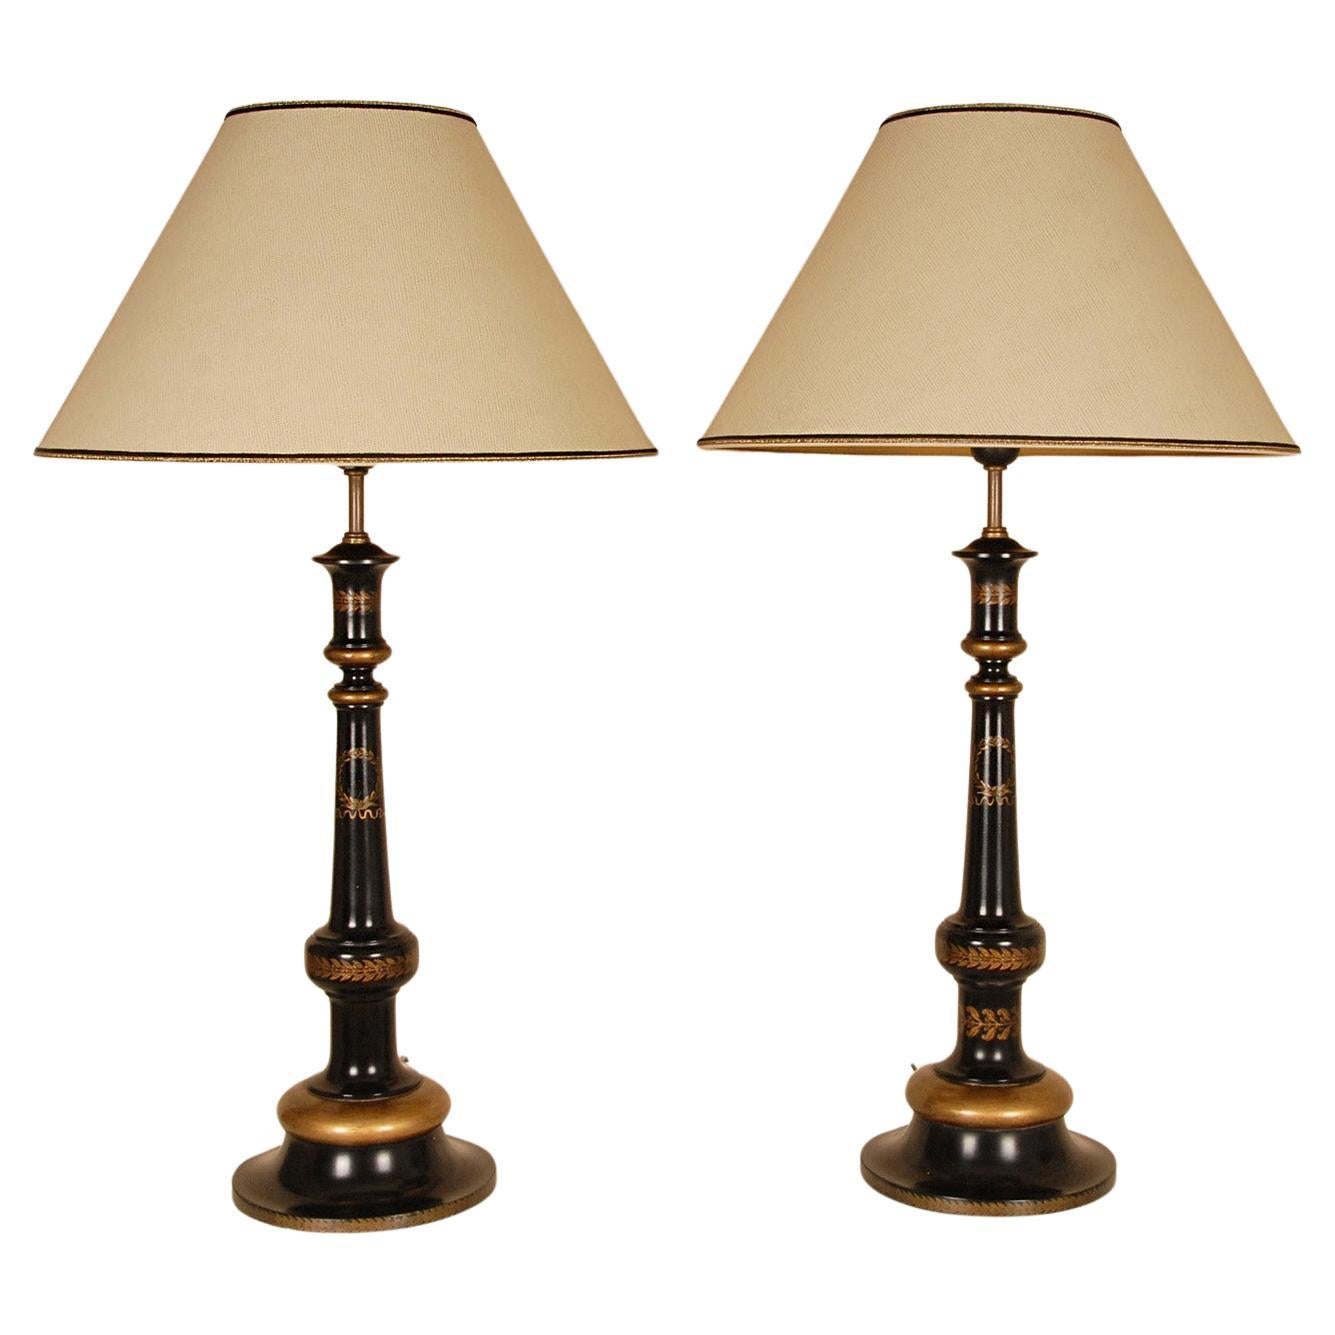 Lampes traditionnelles anglaises dorées, noires et ébénisées